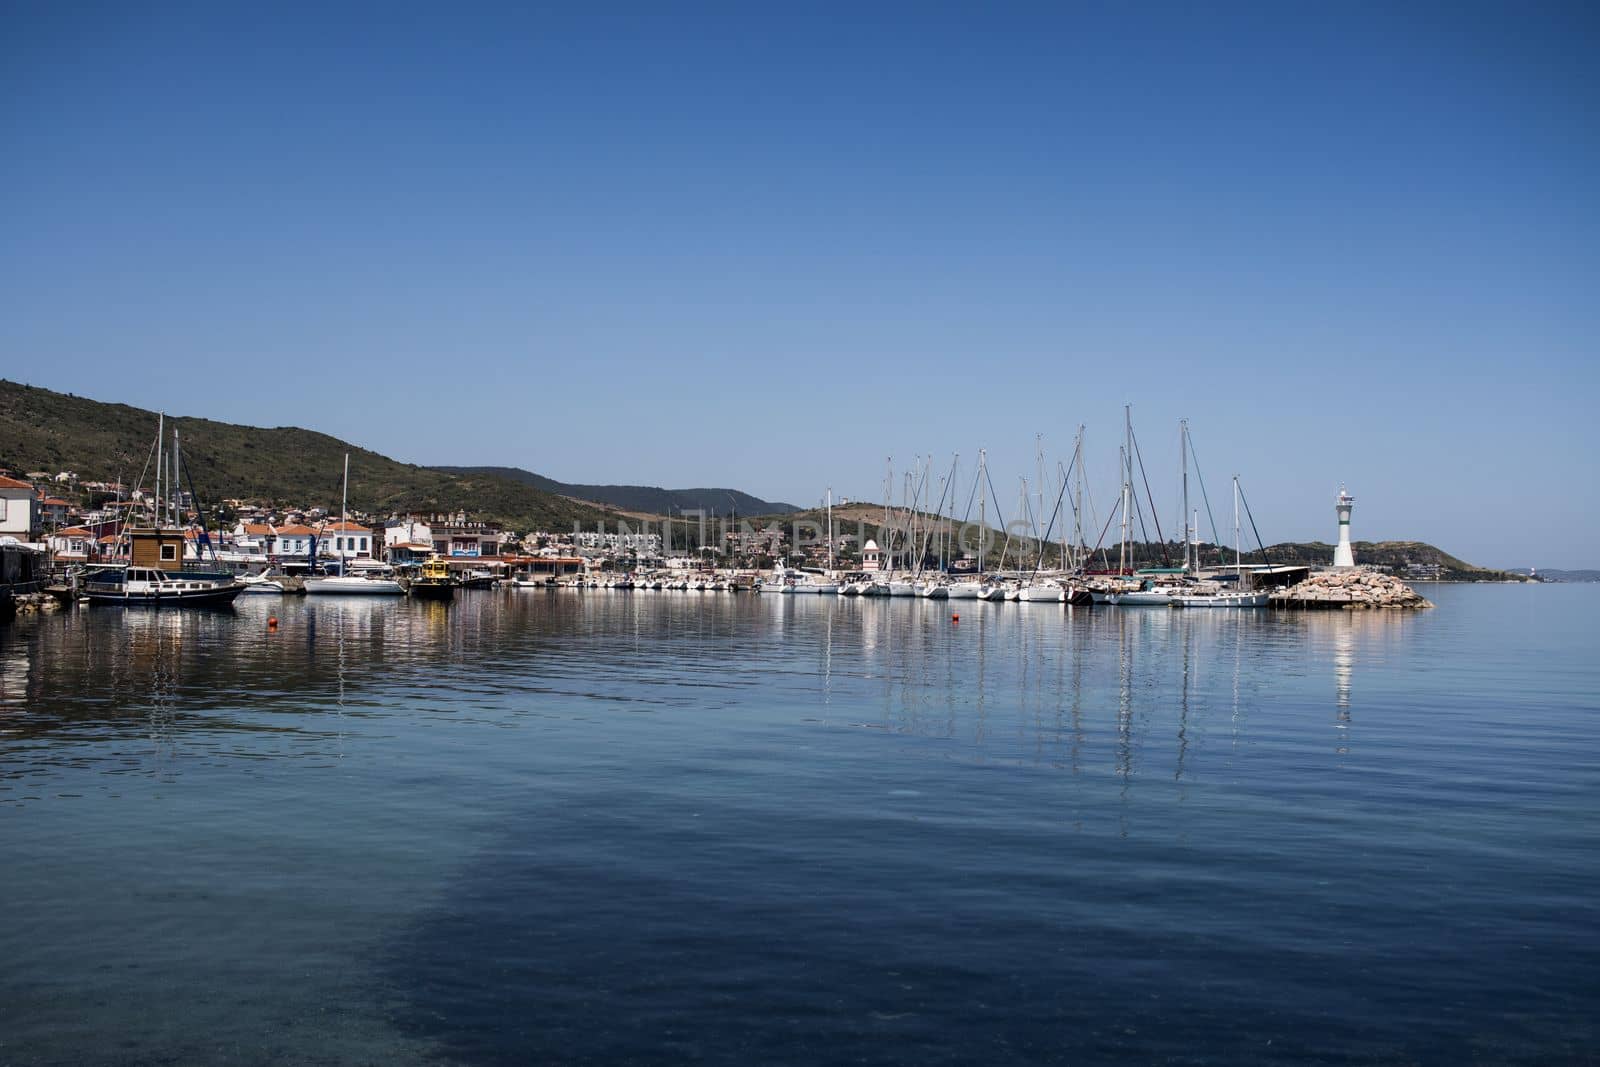 Harbour view in Iskele, Urla. Urla is populer fishing old town in Izmir